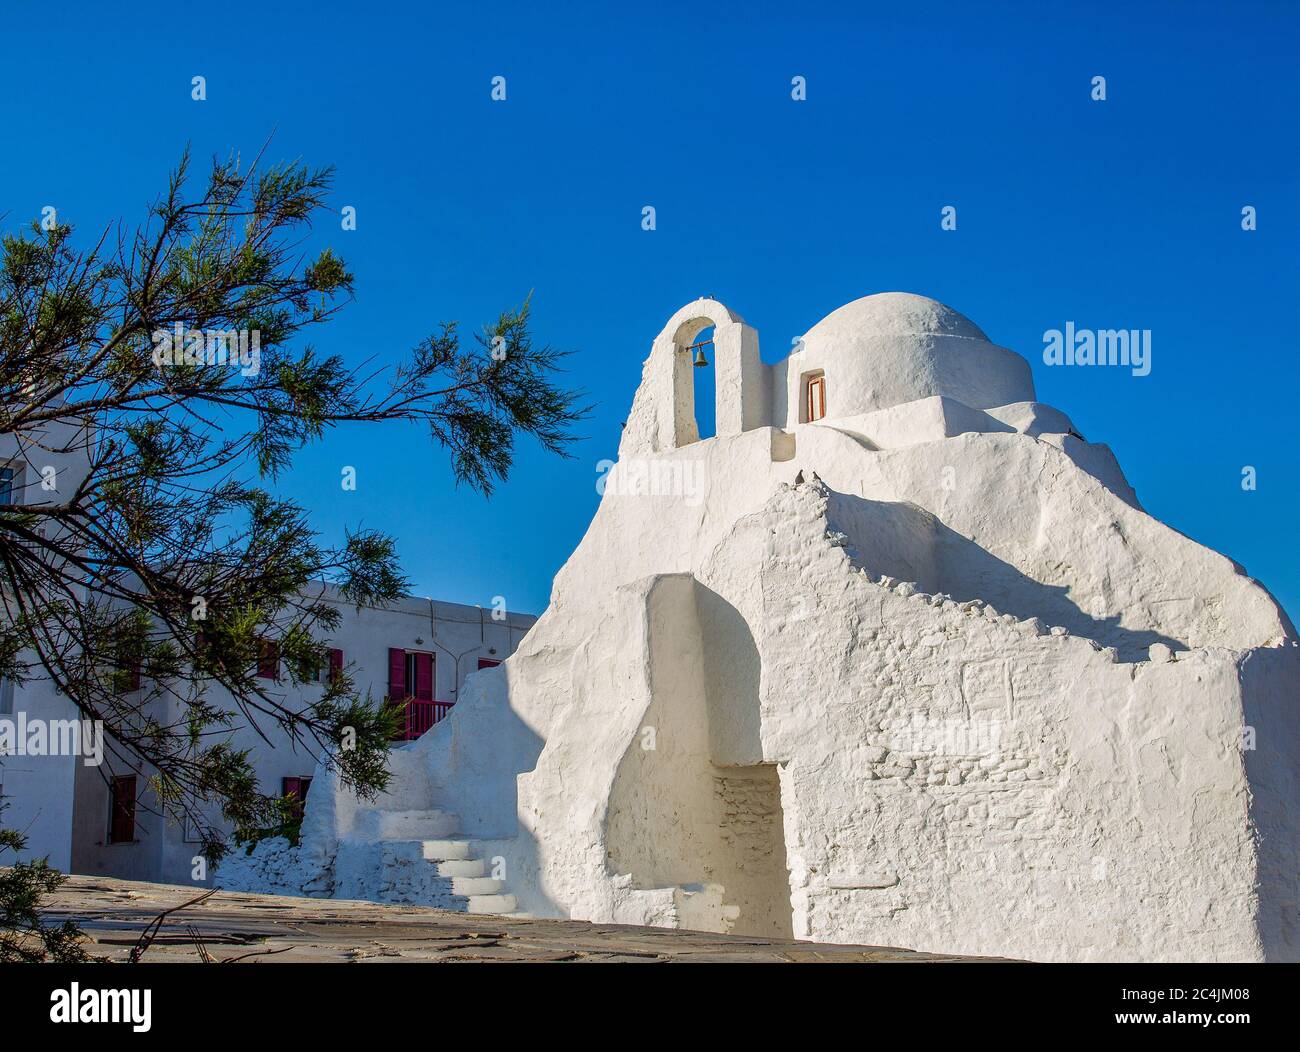 Chiesa cristiana (ortodossa) sulla famosa isola greca di Mykonos. Una mattina di sole a Mykonos! Foto Stock